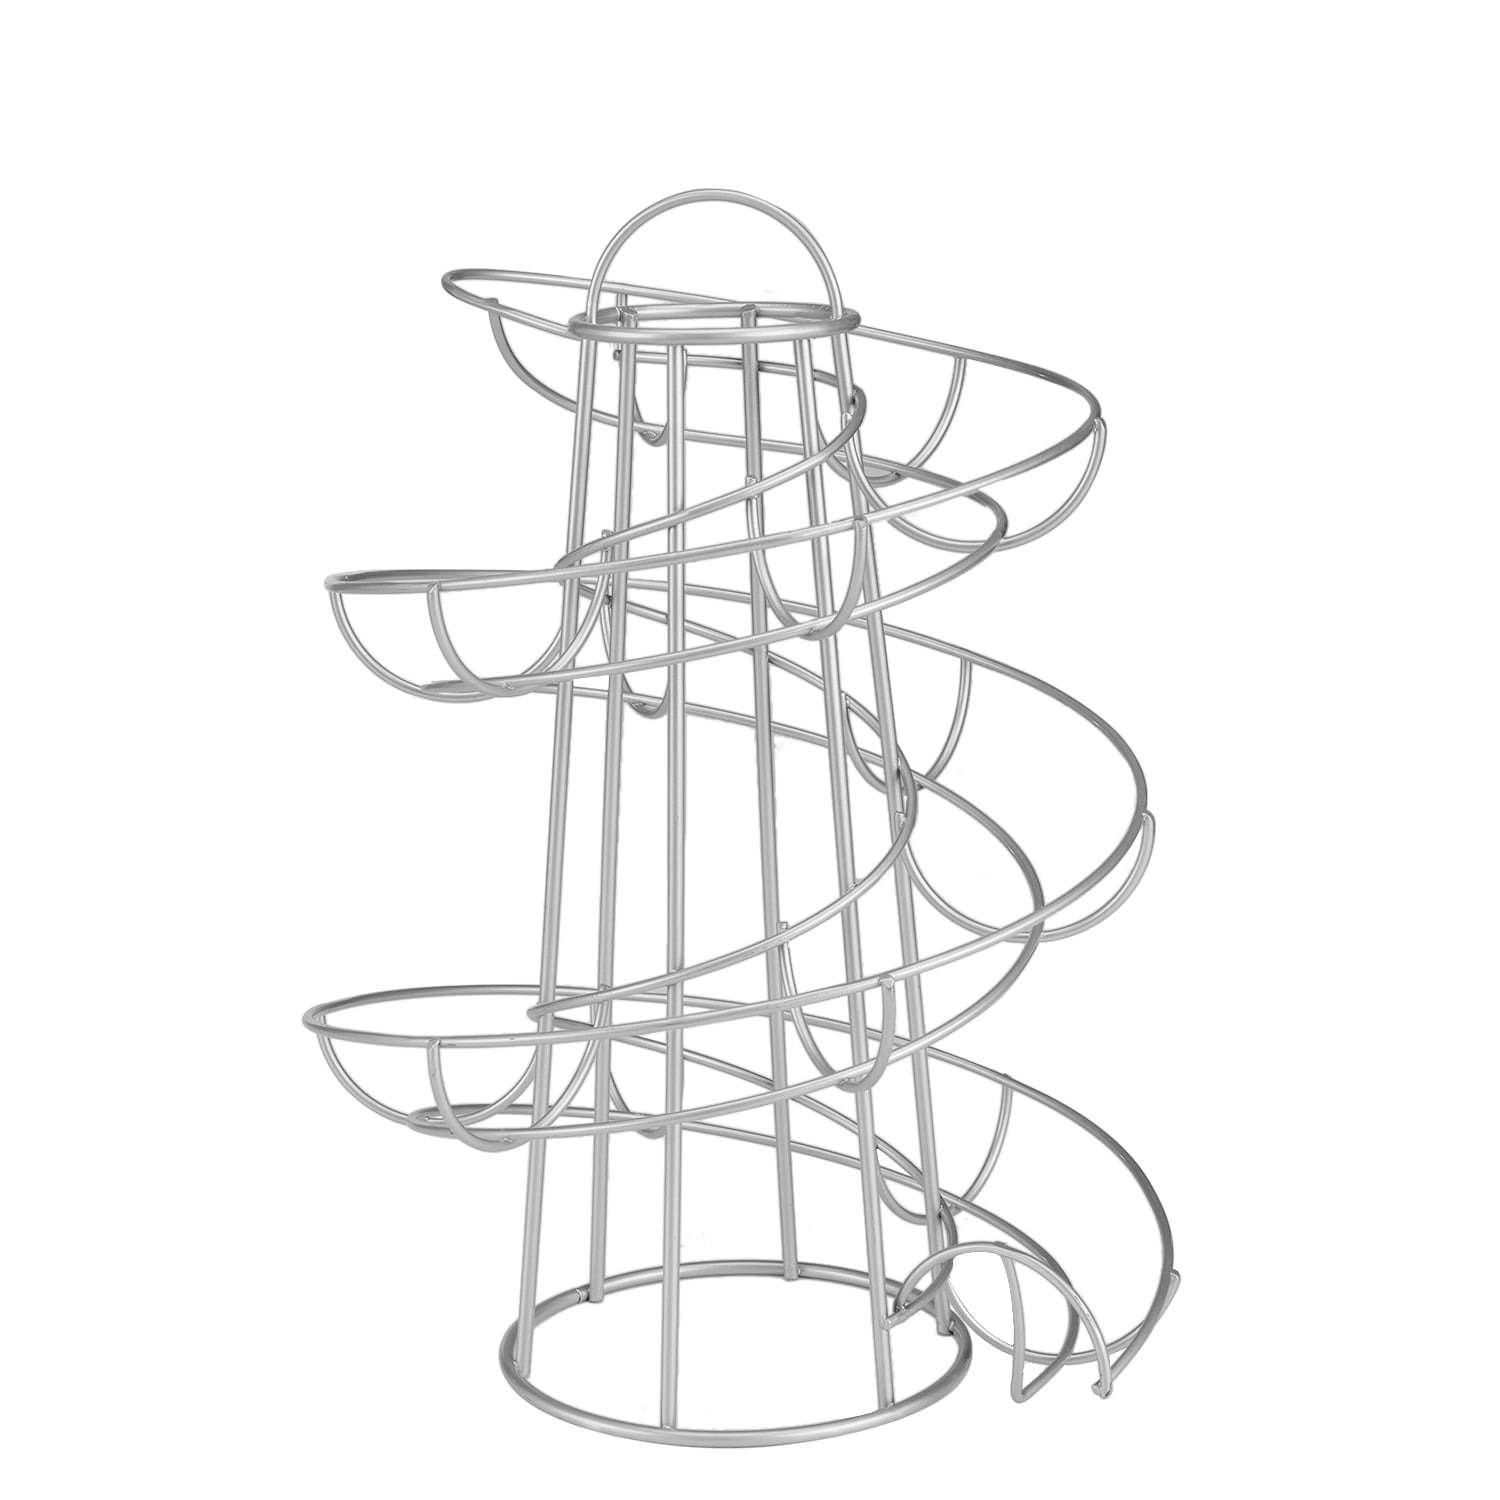 Egg Skelter Deluxe Modern Spiraling Dispenser Rack Basket Storage Space Up to 24 